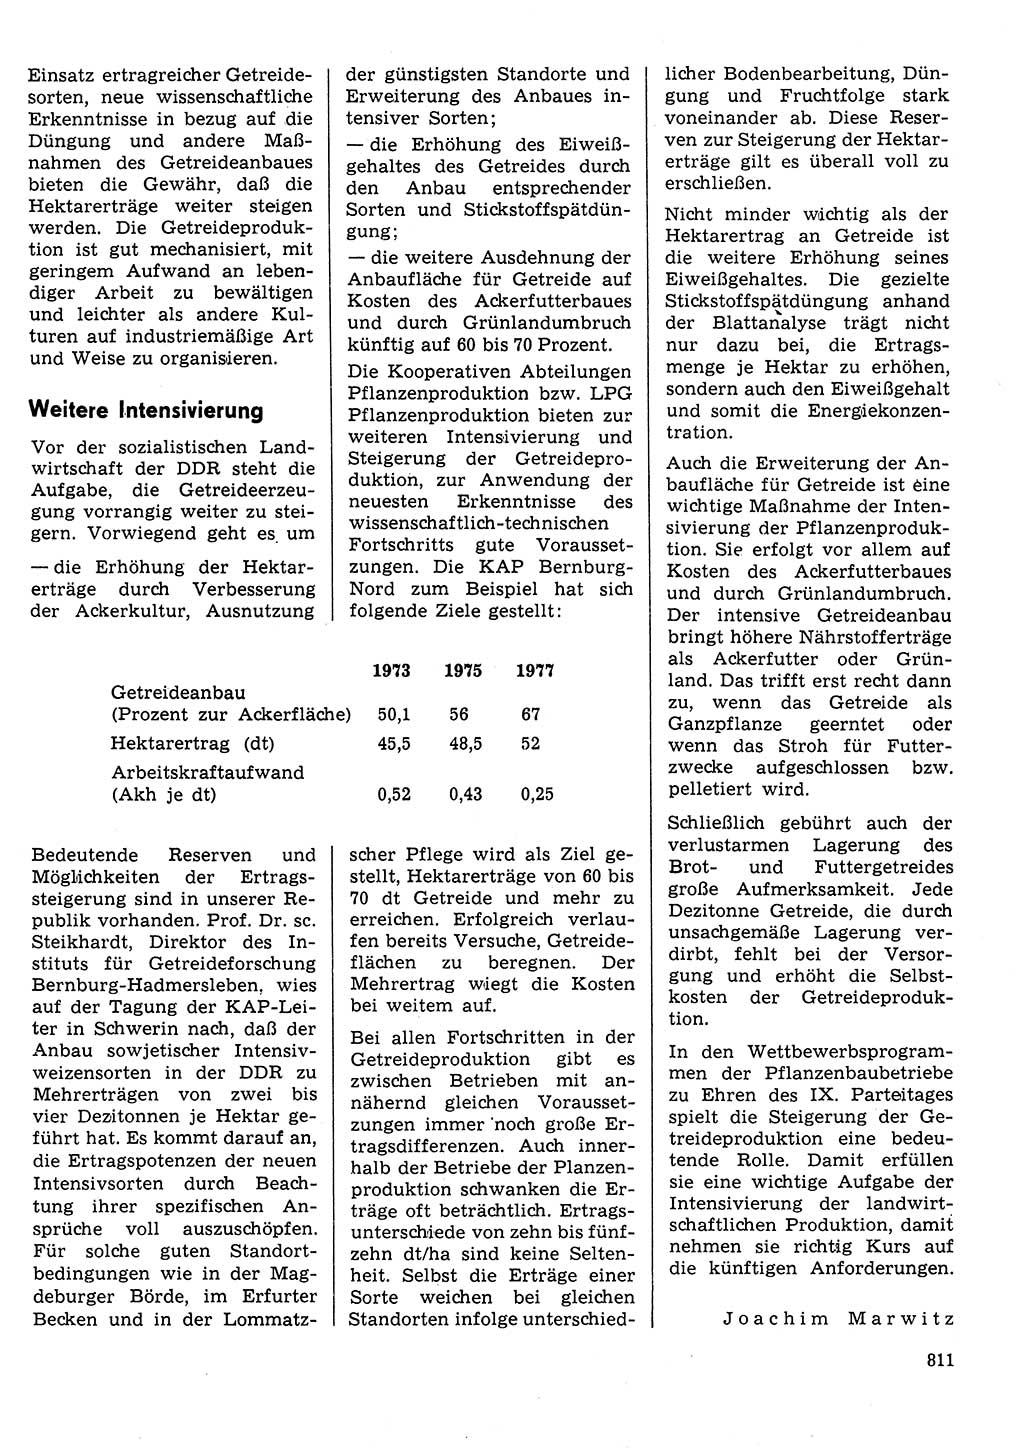 Neuer Weg (NW), Organ des Zentralkomitees (ZK) der SED (Sozialistische Einheitspartei Deutschlands) für Fragen des Parteilebens, 30. Jahrgang [Deutsche Demokratische Republik (DDR)] 1975, Seite 811 (NW ZK SED DDR 1975, S. 811)